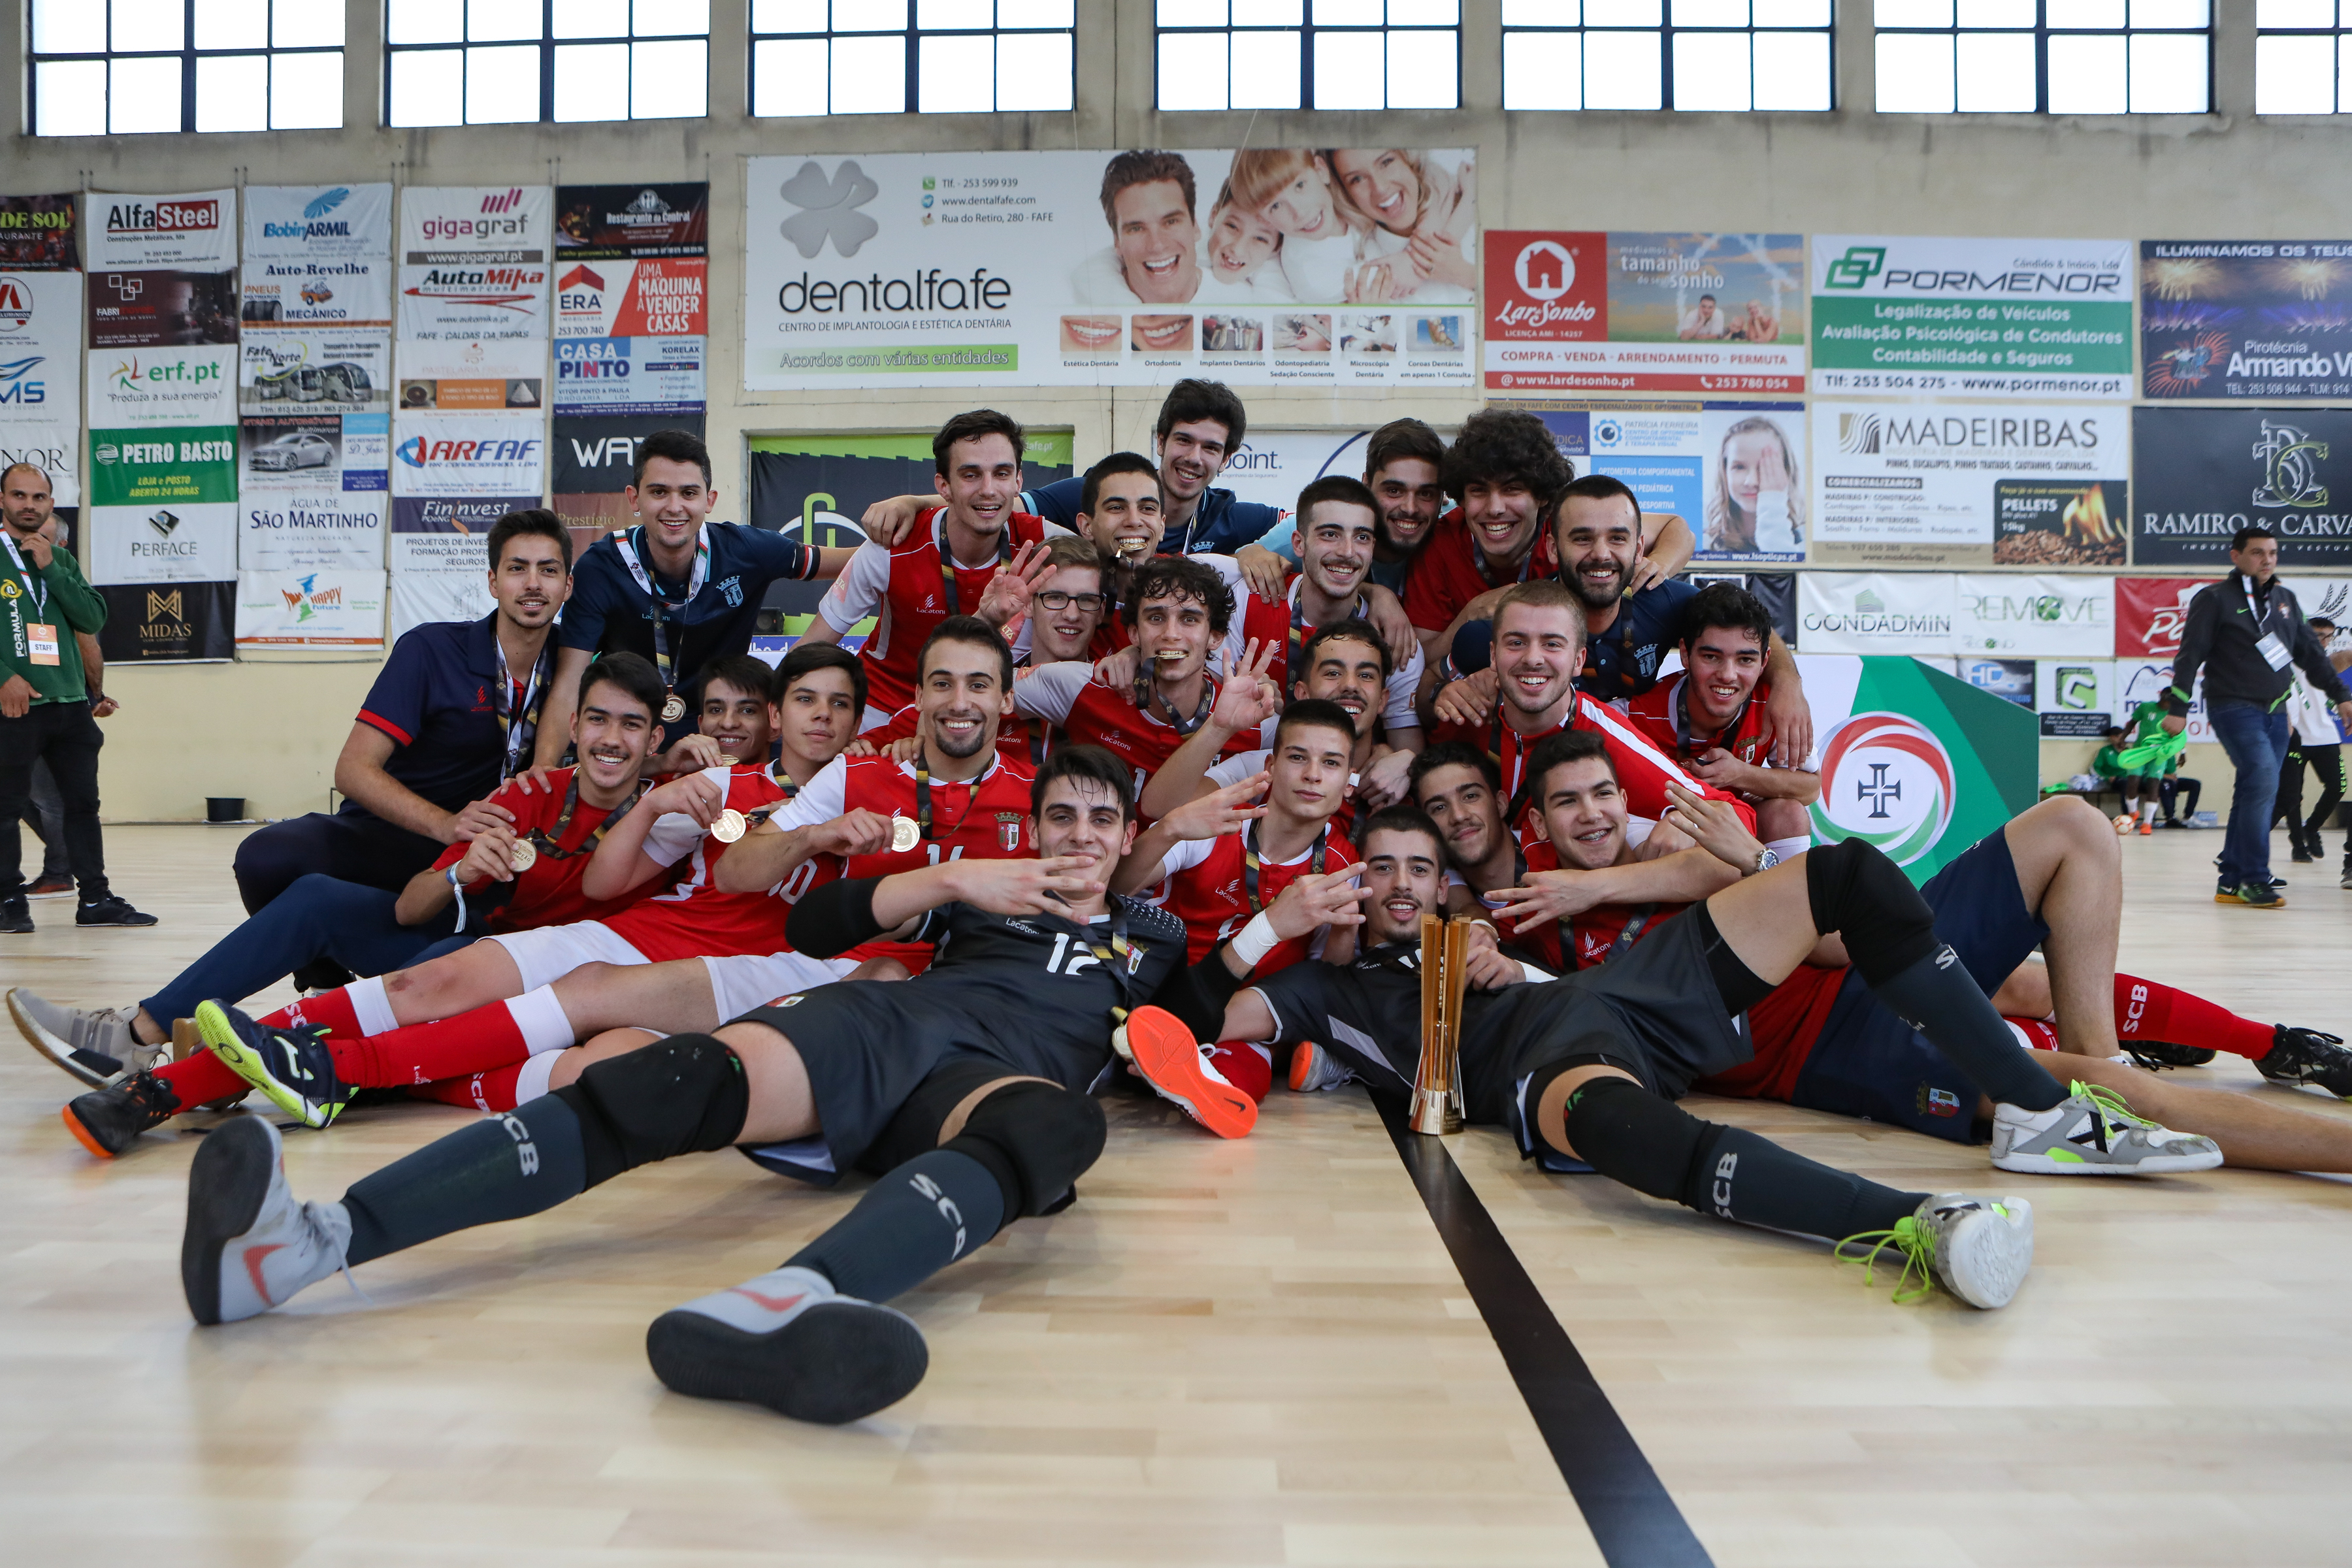 SC Braga/AAUM Futsal é o grande vencedor da Taça Nacional de Futsal | Juniores A